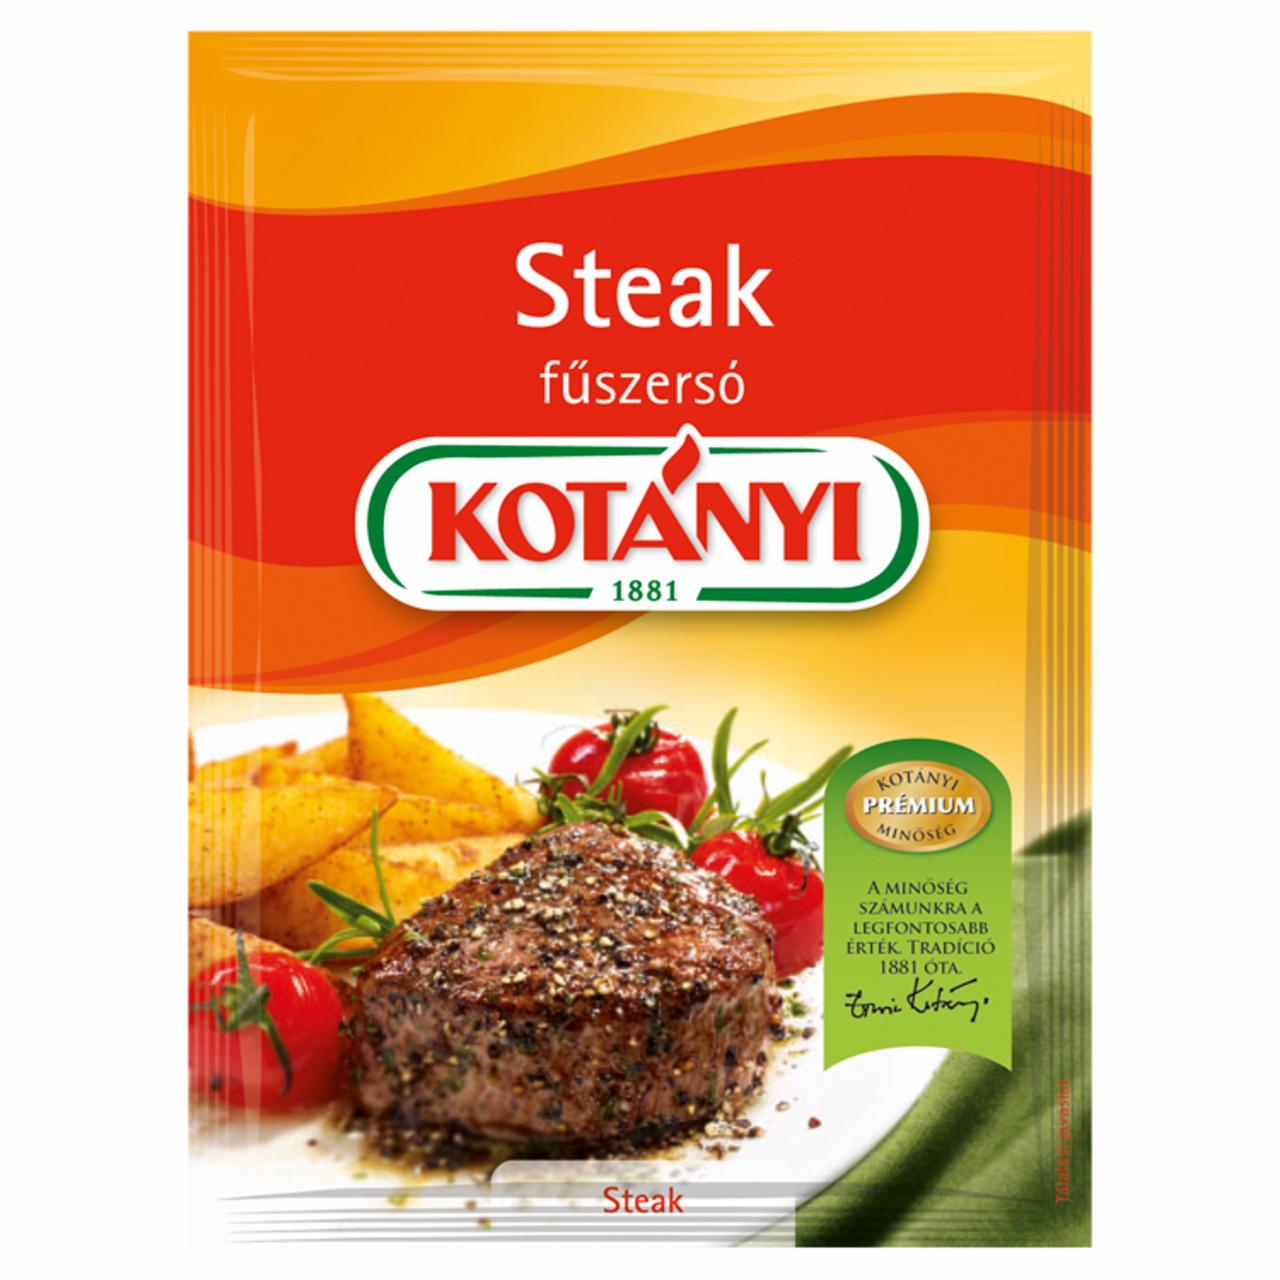 Képek - Kotányi steak fűszersó 35 g